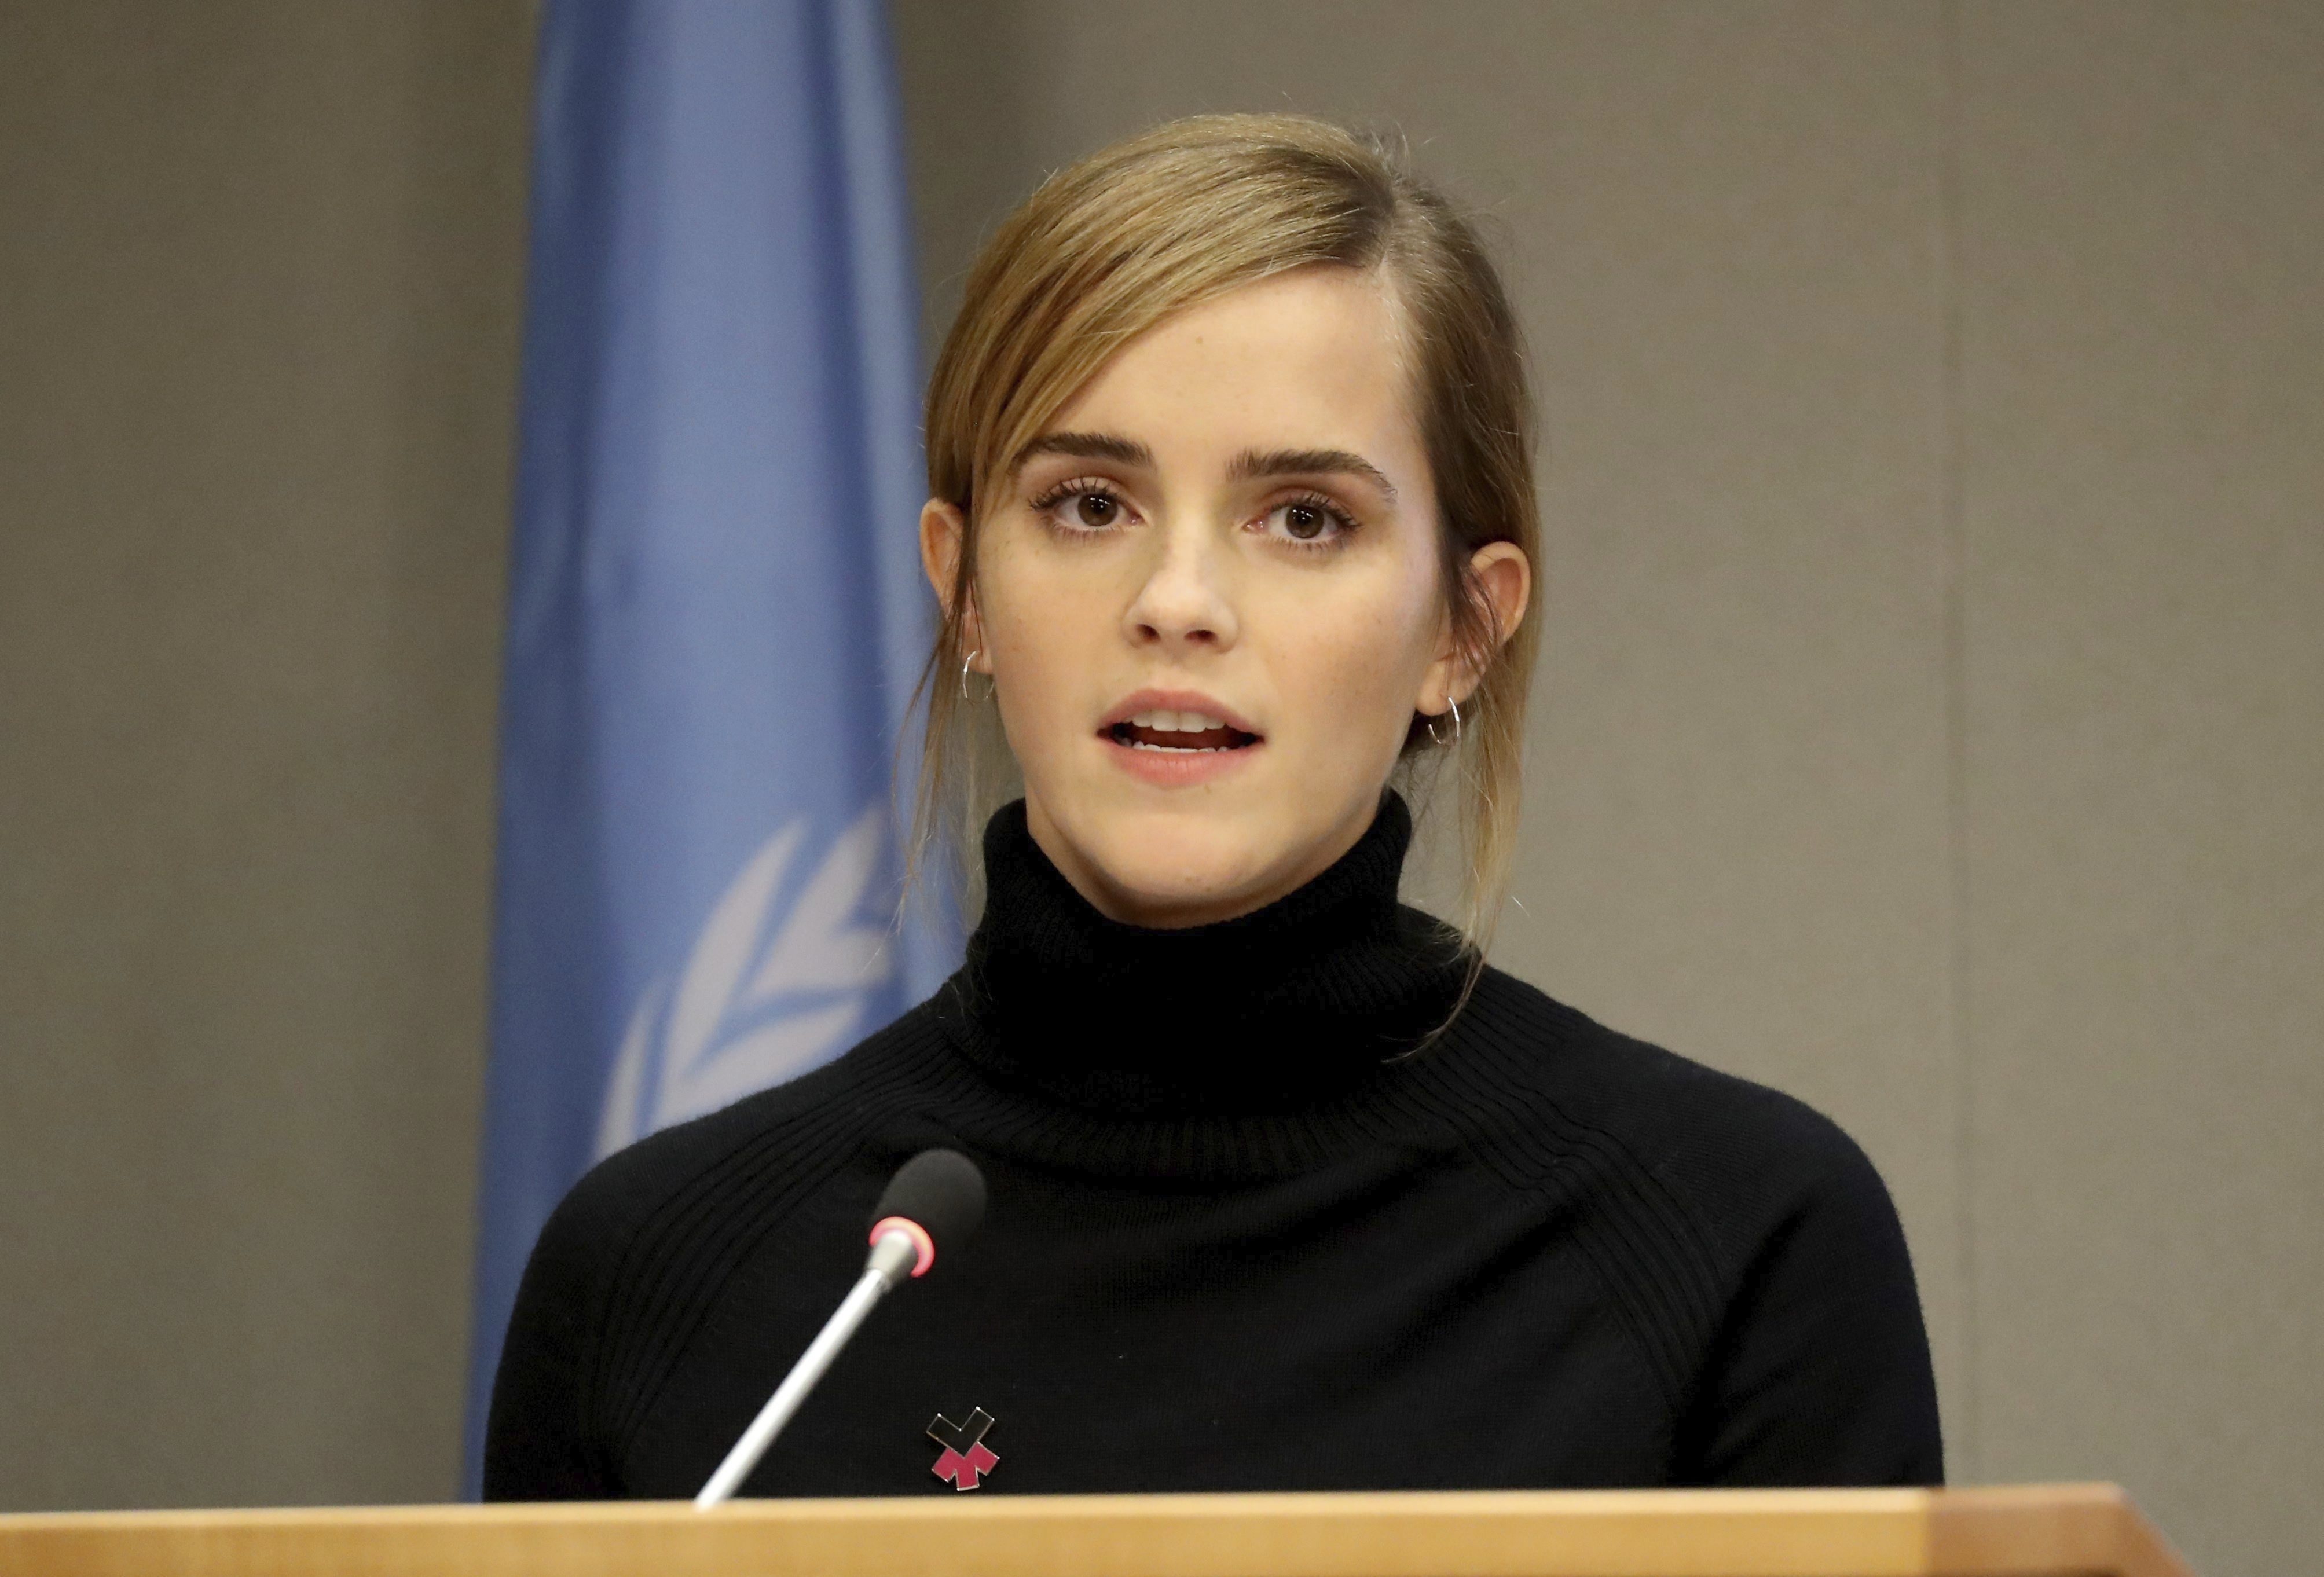 Tras los comentarios de J.K. Rowling, Emma Watson defendió al colectivo trans